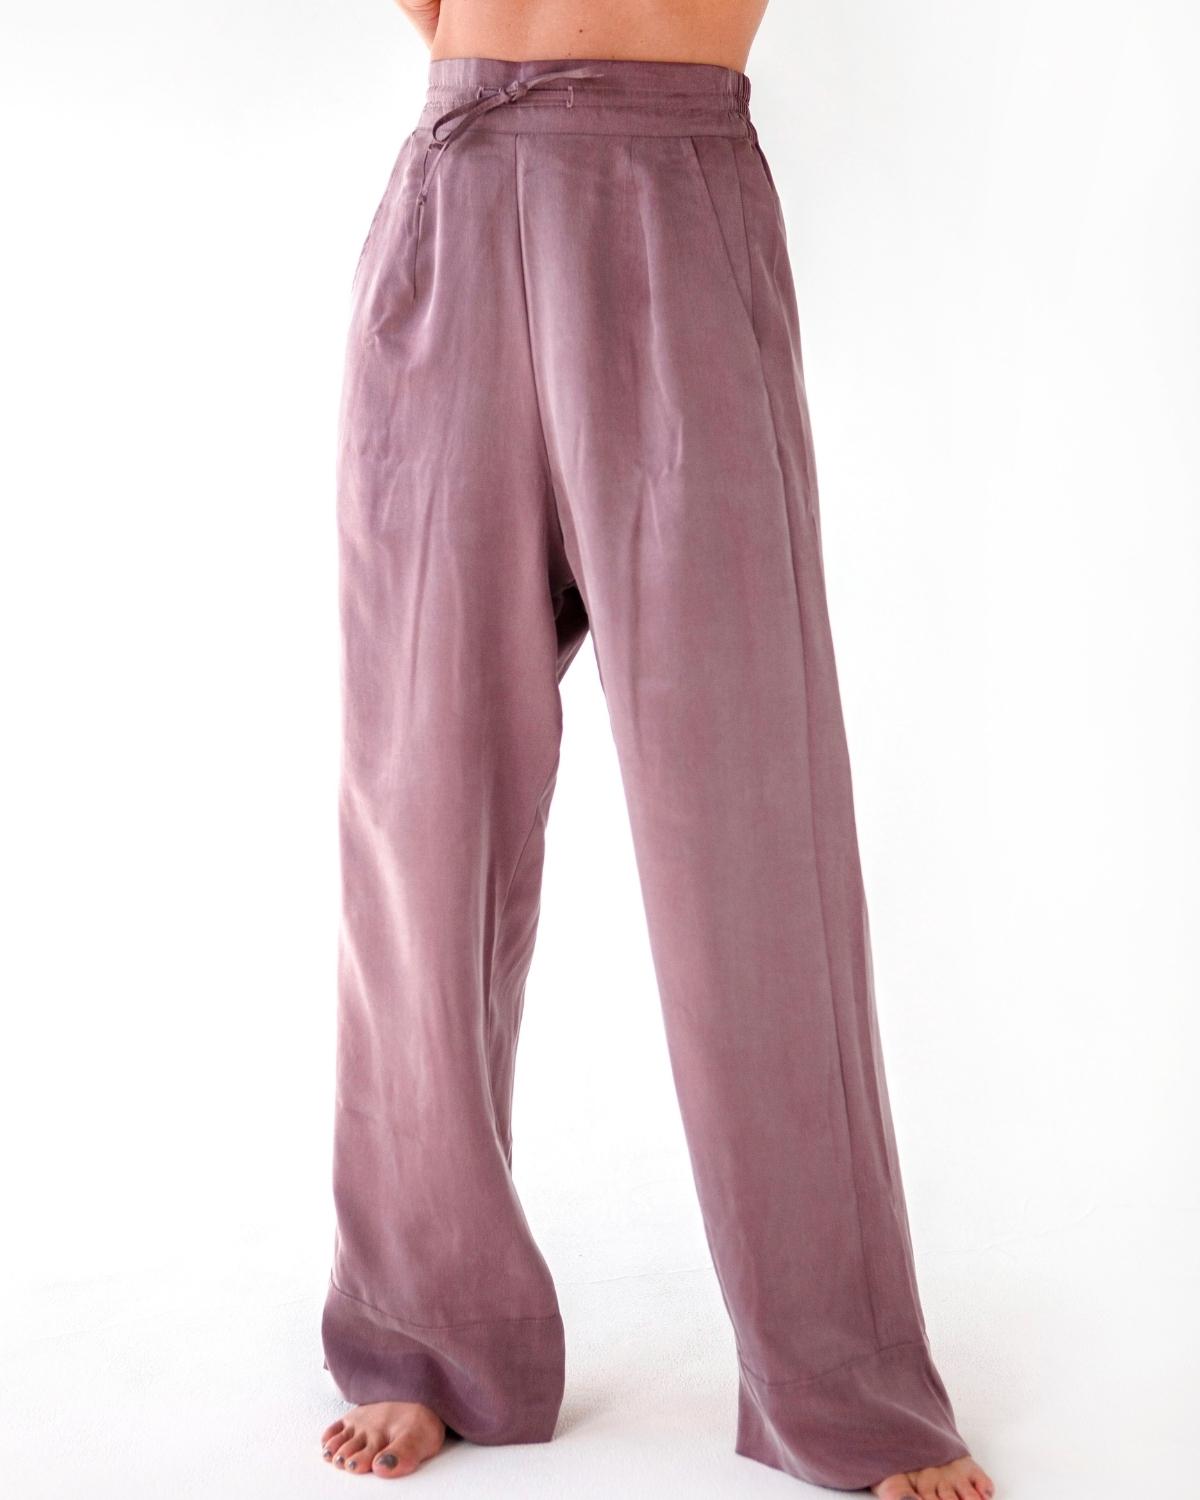 niLuu Women's Pants BLUSH Size S